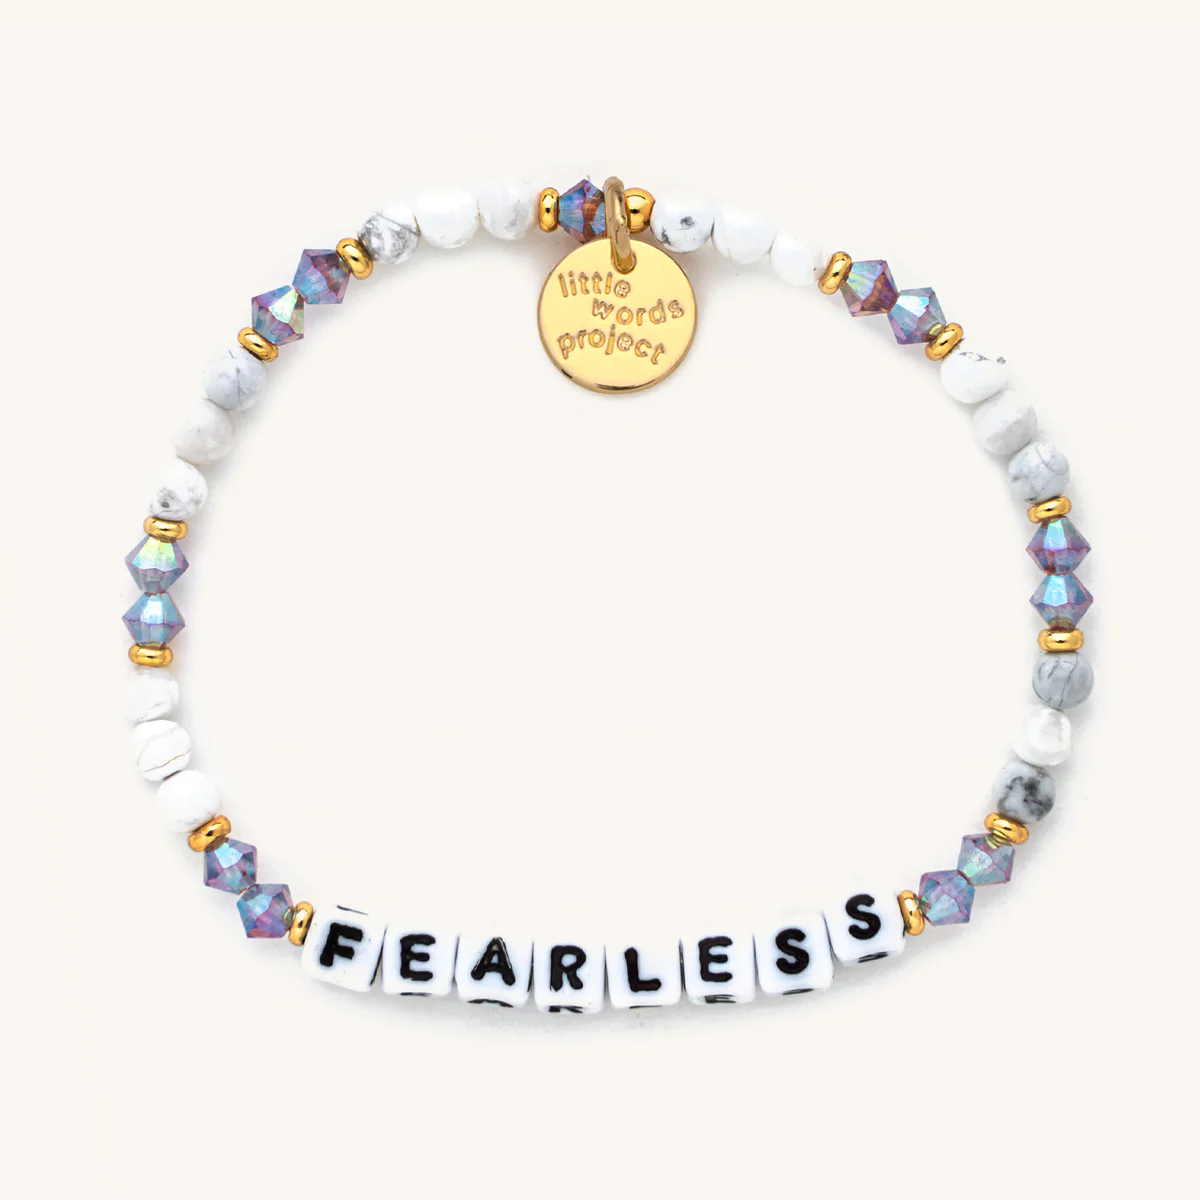 Little Words Project Fearless White Bracelet